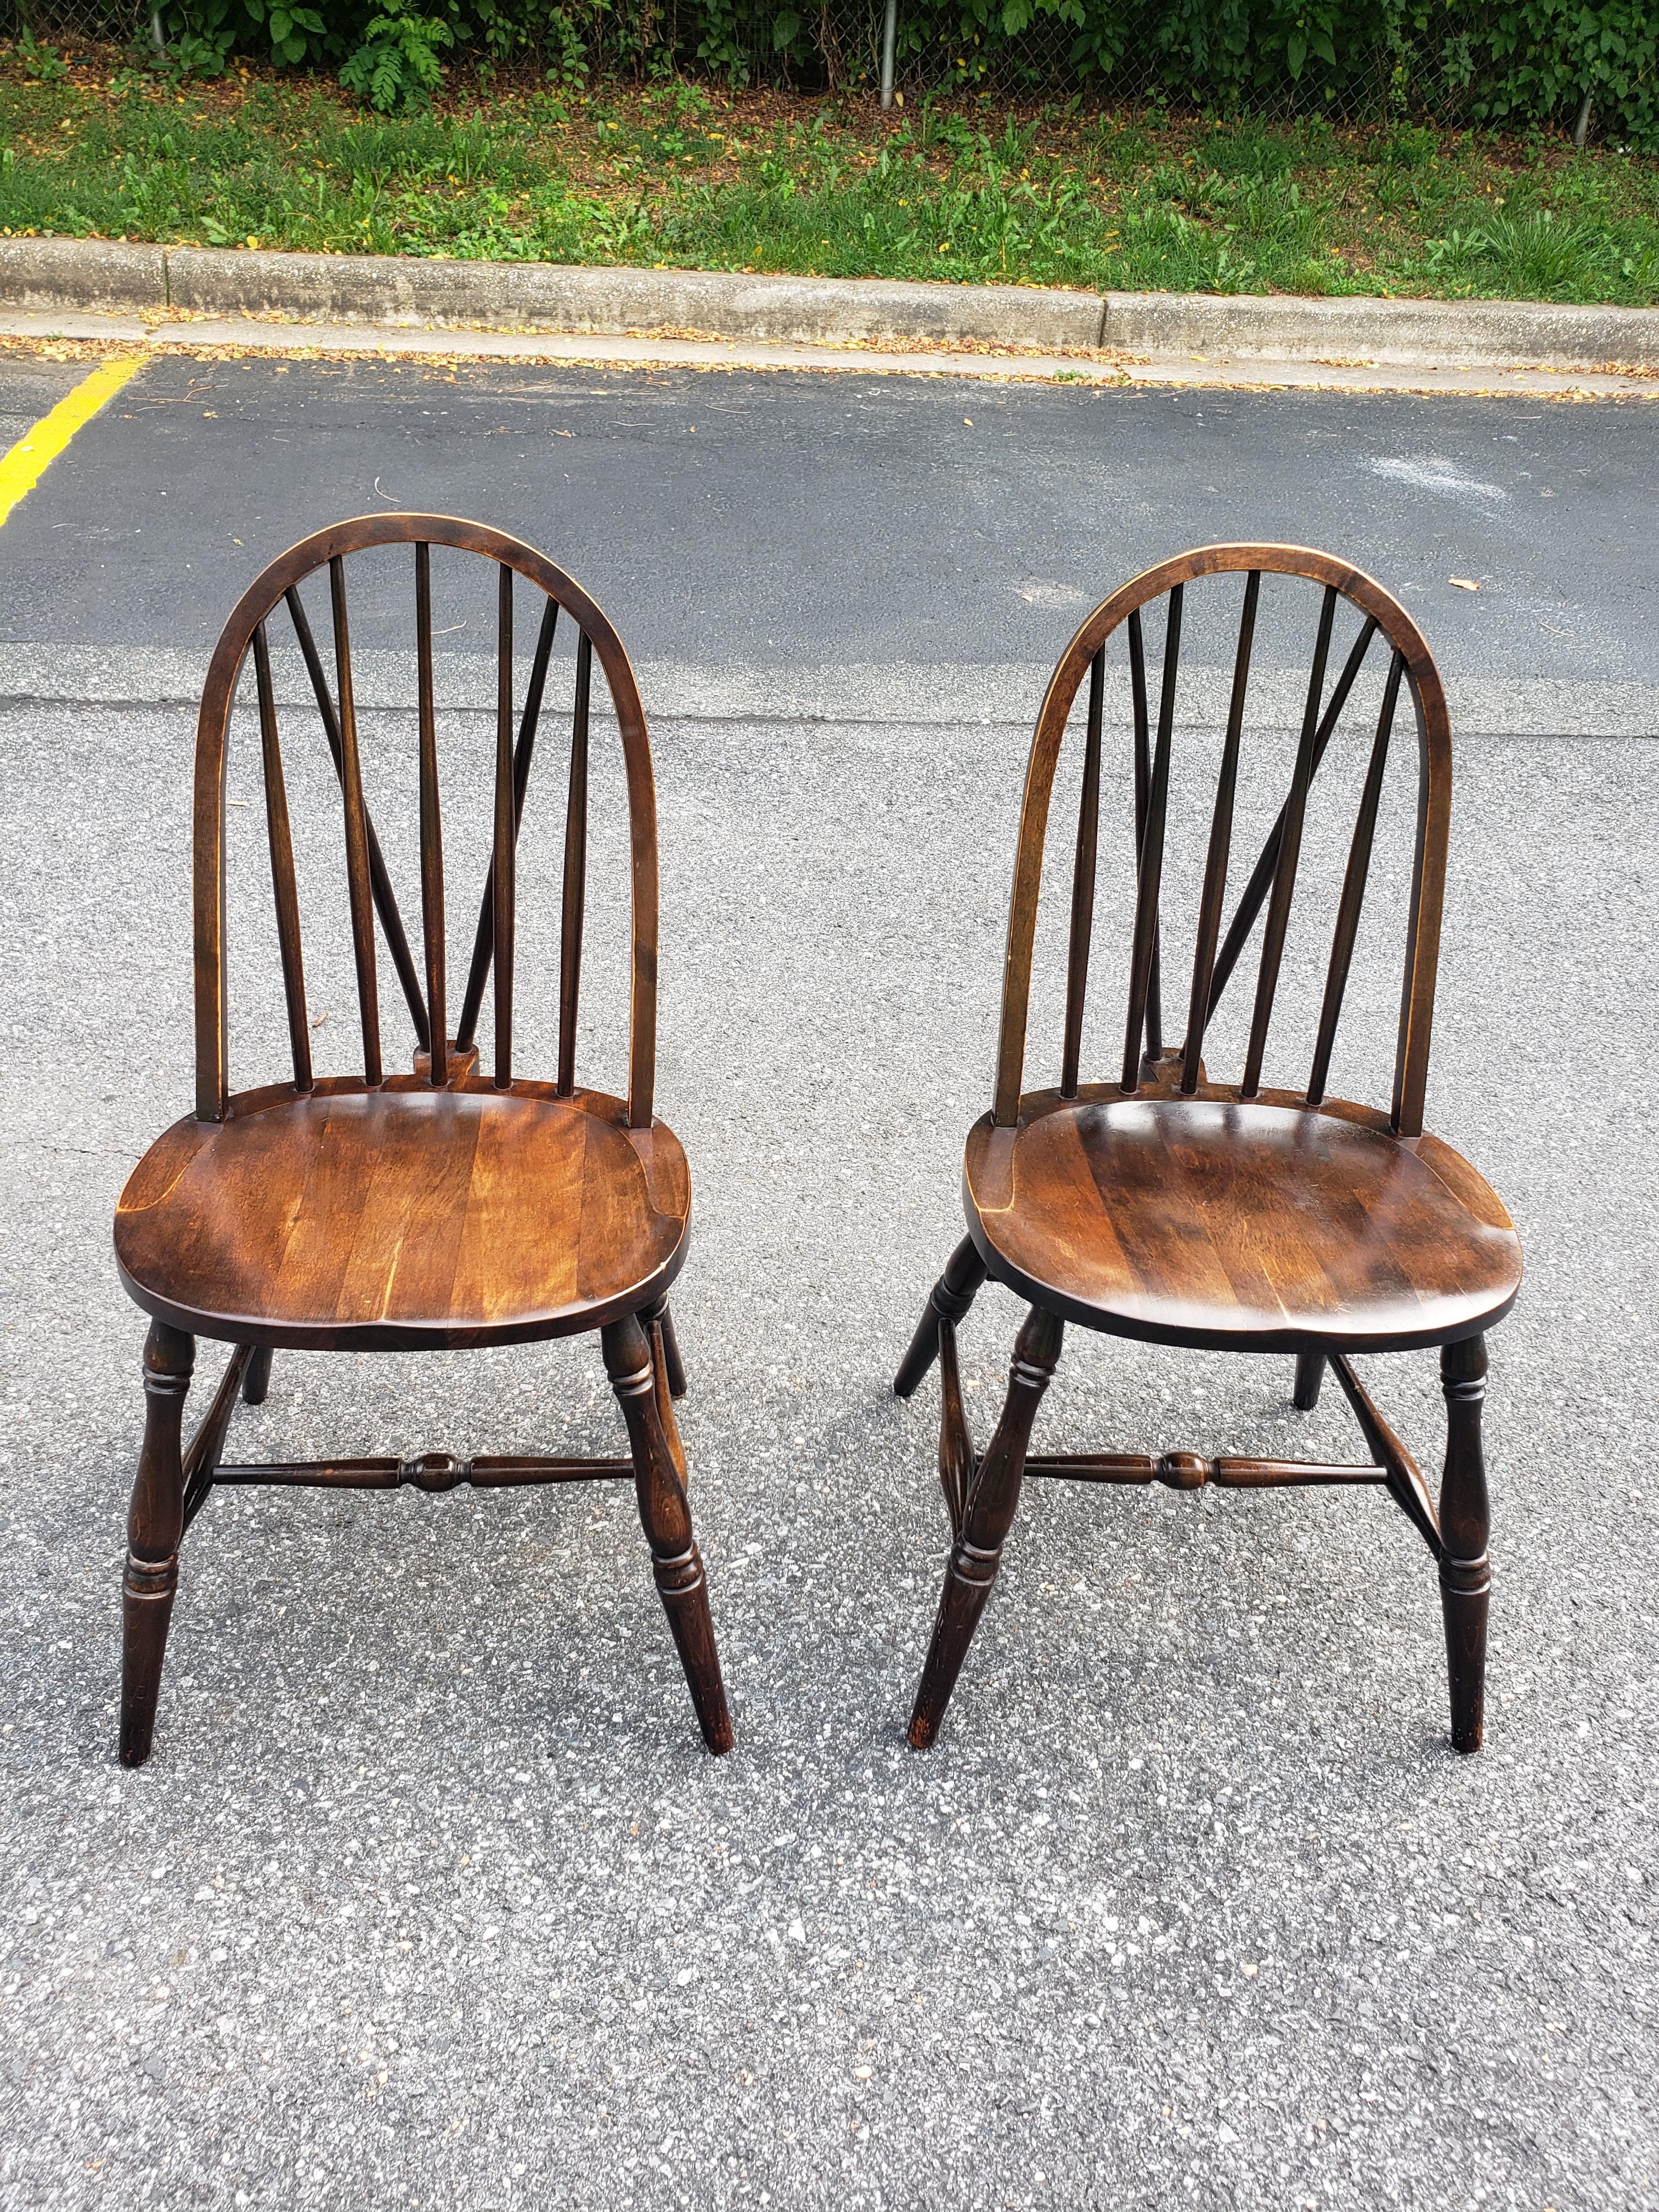 
Une paire de chaises d'appoint Windsor en noyer à dossier en accolade, datant des années 1900, de la société Parkersburg Chair. Elles ont été récemment restaurées et sont en très bon état. 
Hauteur du siège 17.5